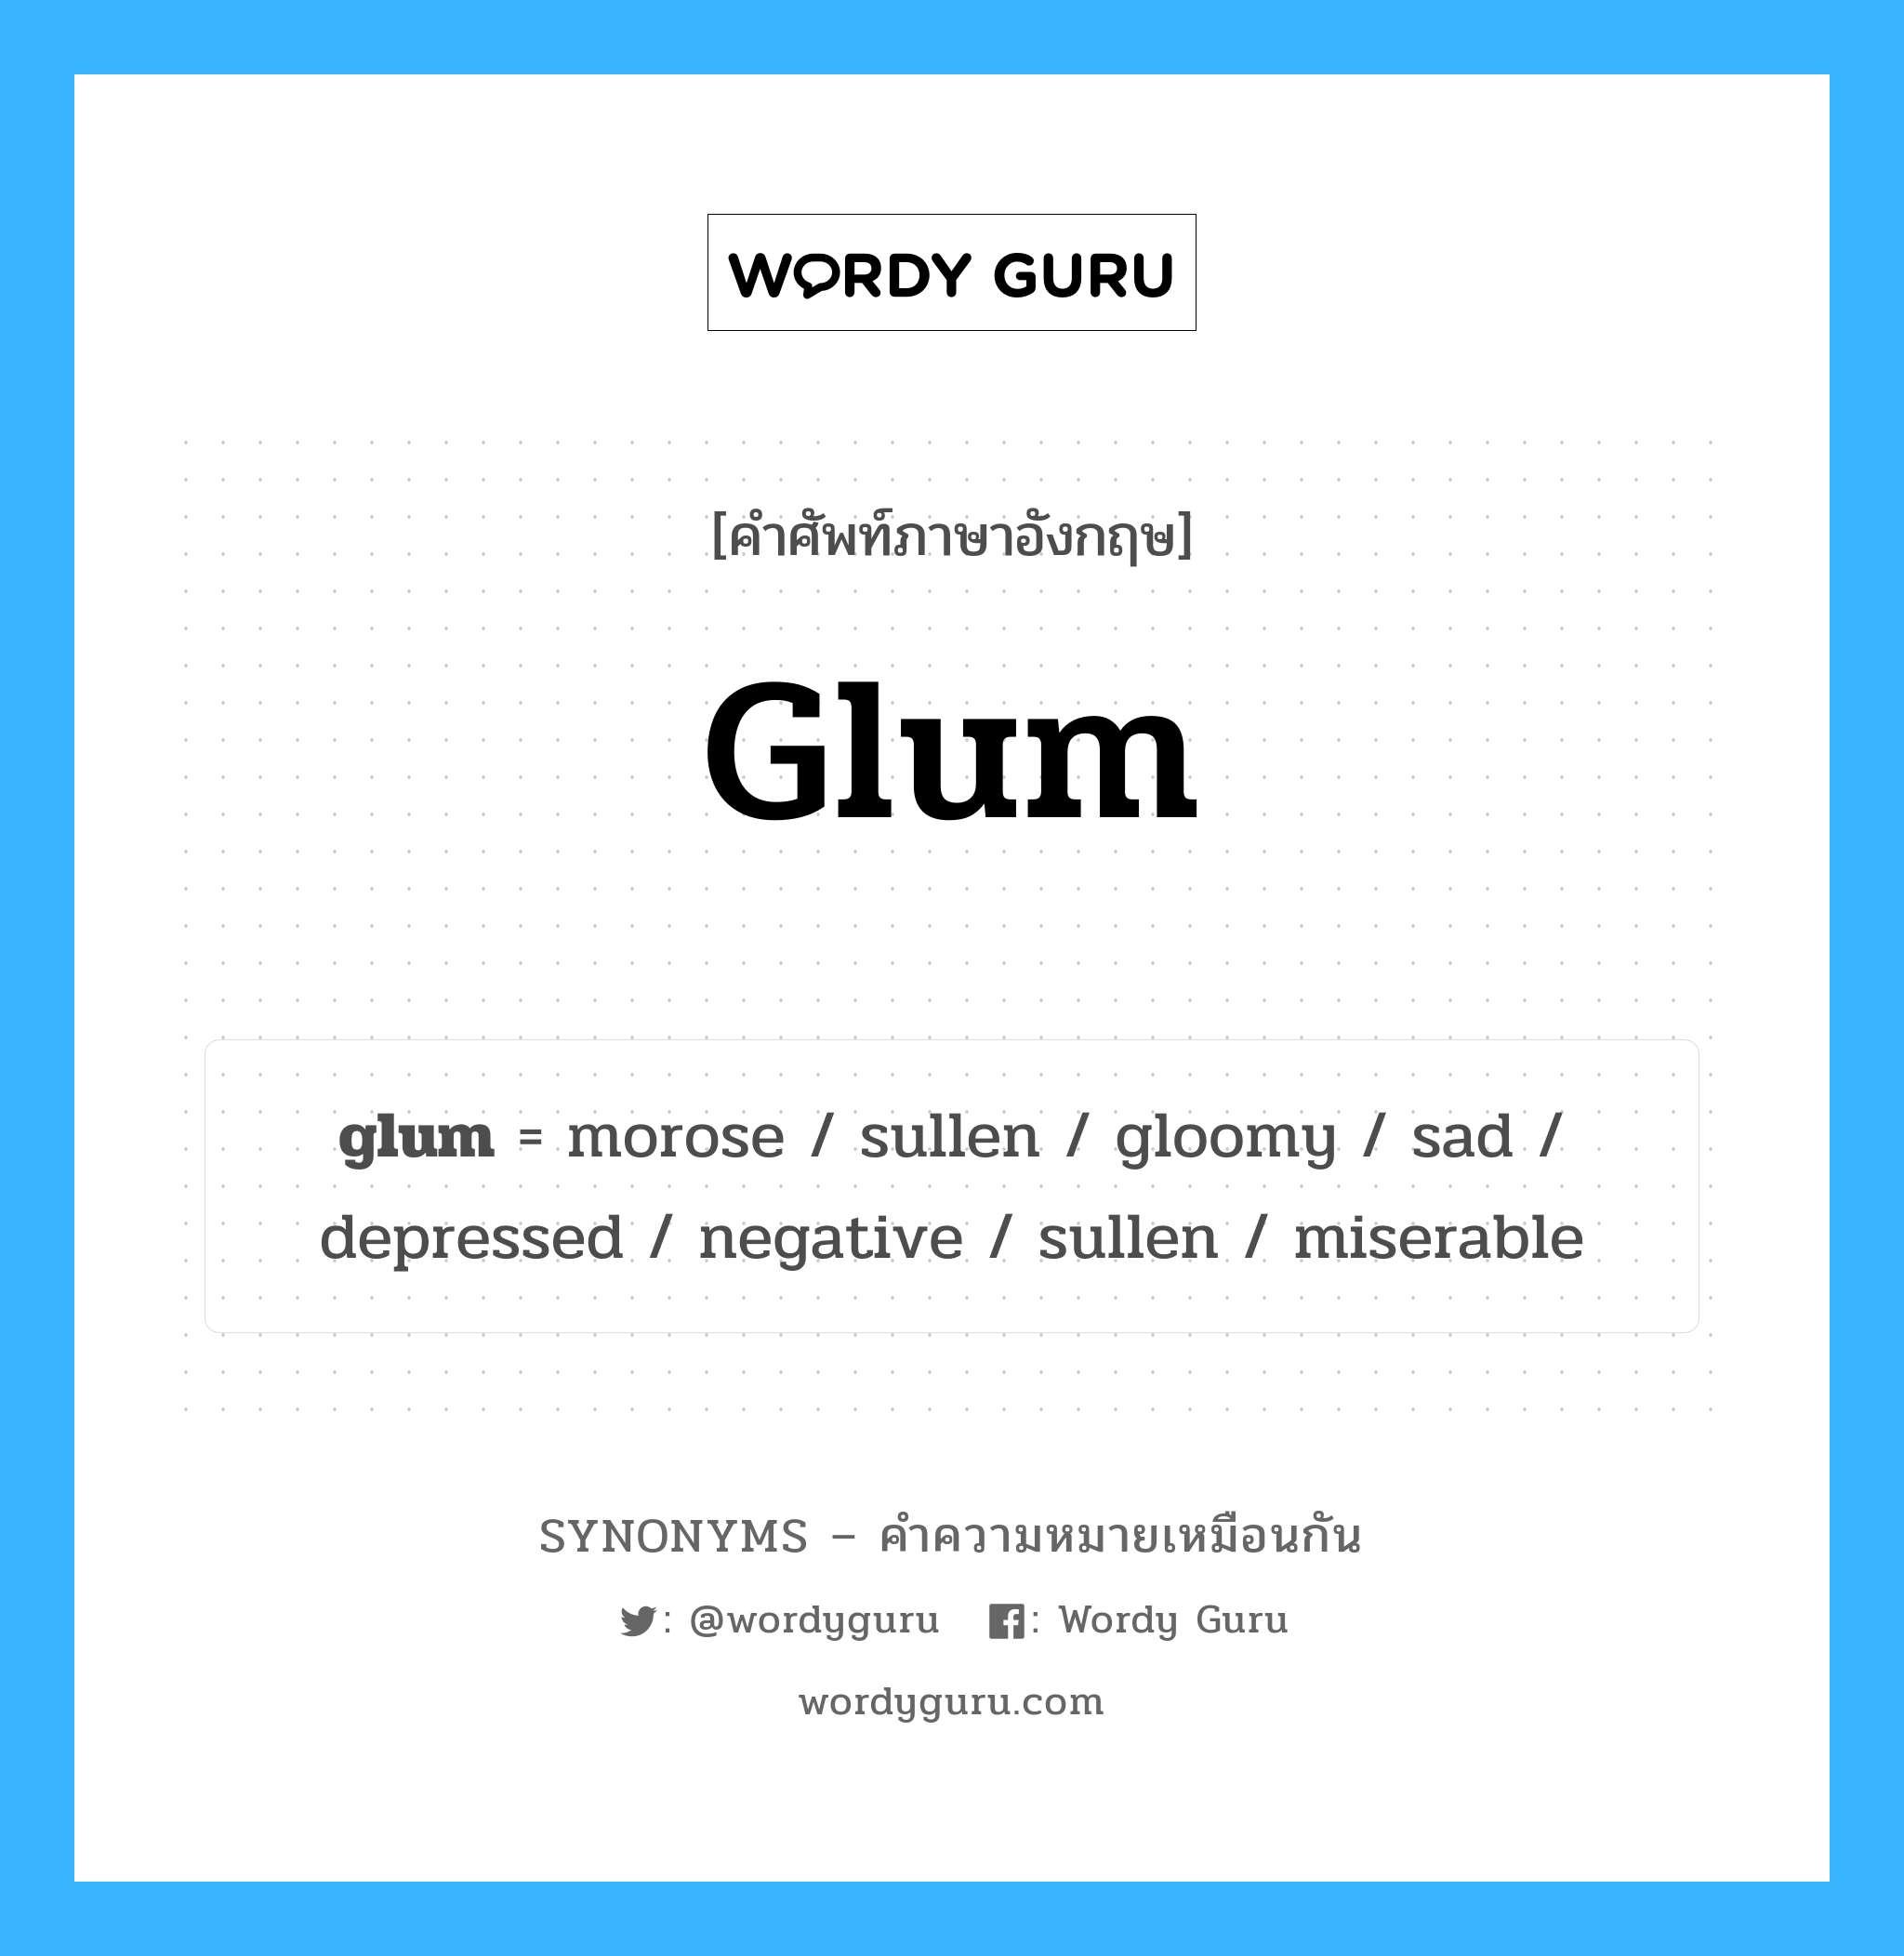 sullen เป็นหนึ่งใน glum และมีคำอื่น ๆ อีกดังนี้, คำศัพท์ภาษาอังกฤษ sullen ความหมายคล้ายกันกับ glum แปลว่า คือ หมวด glum